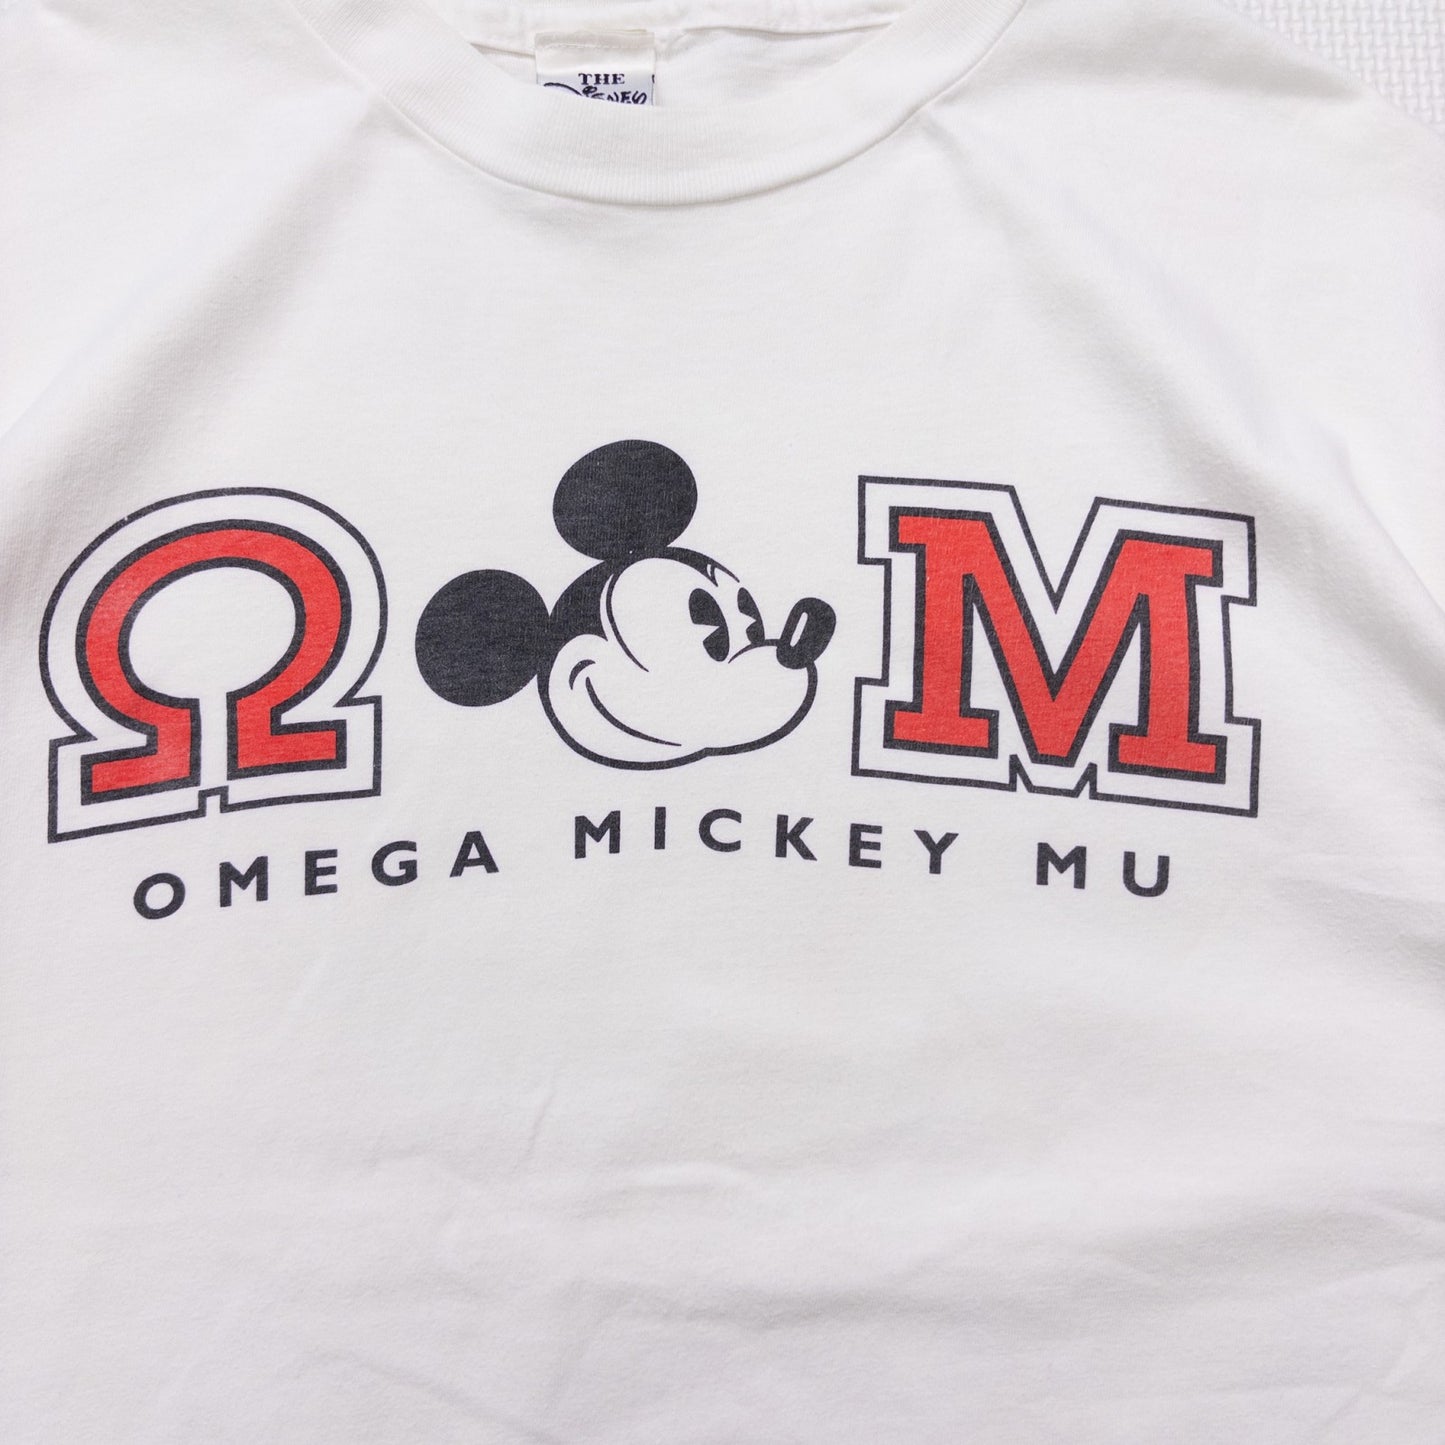 90s Disney ”MICKY MOUSE” XL